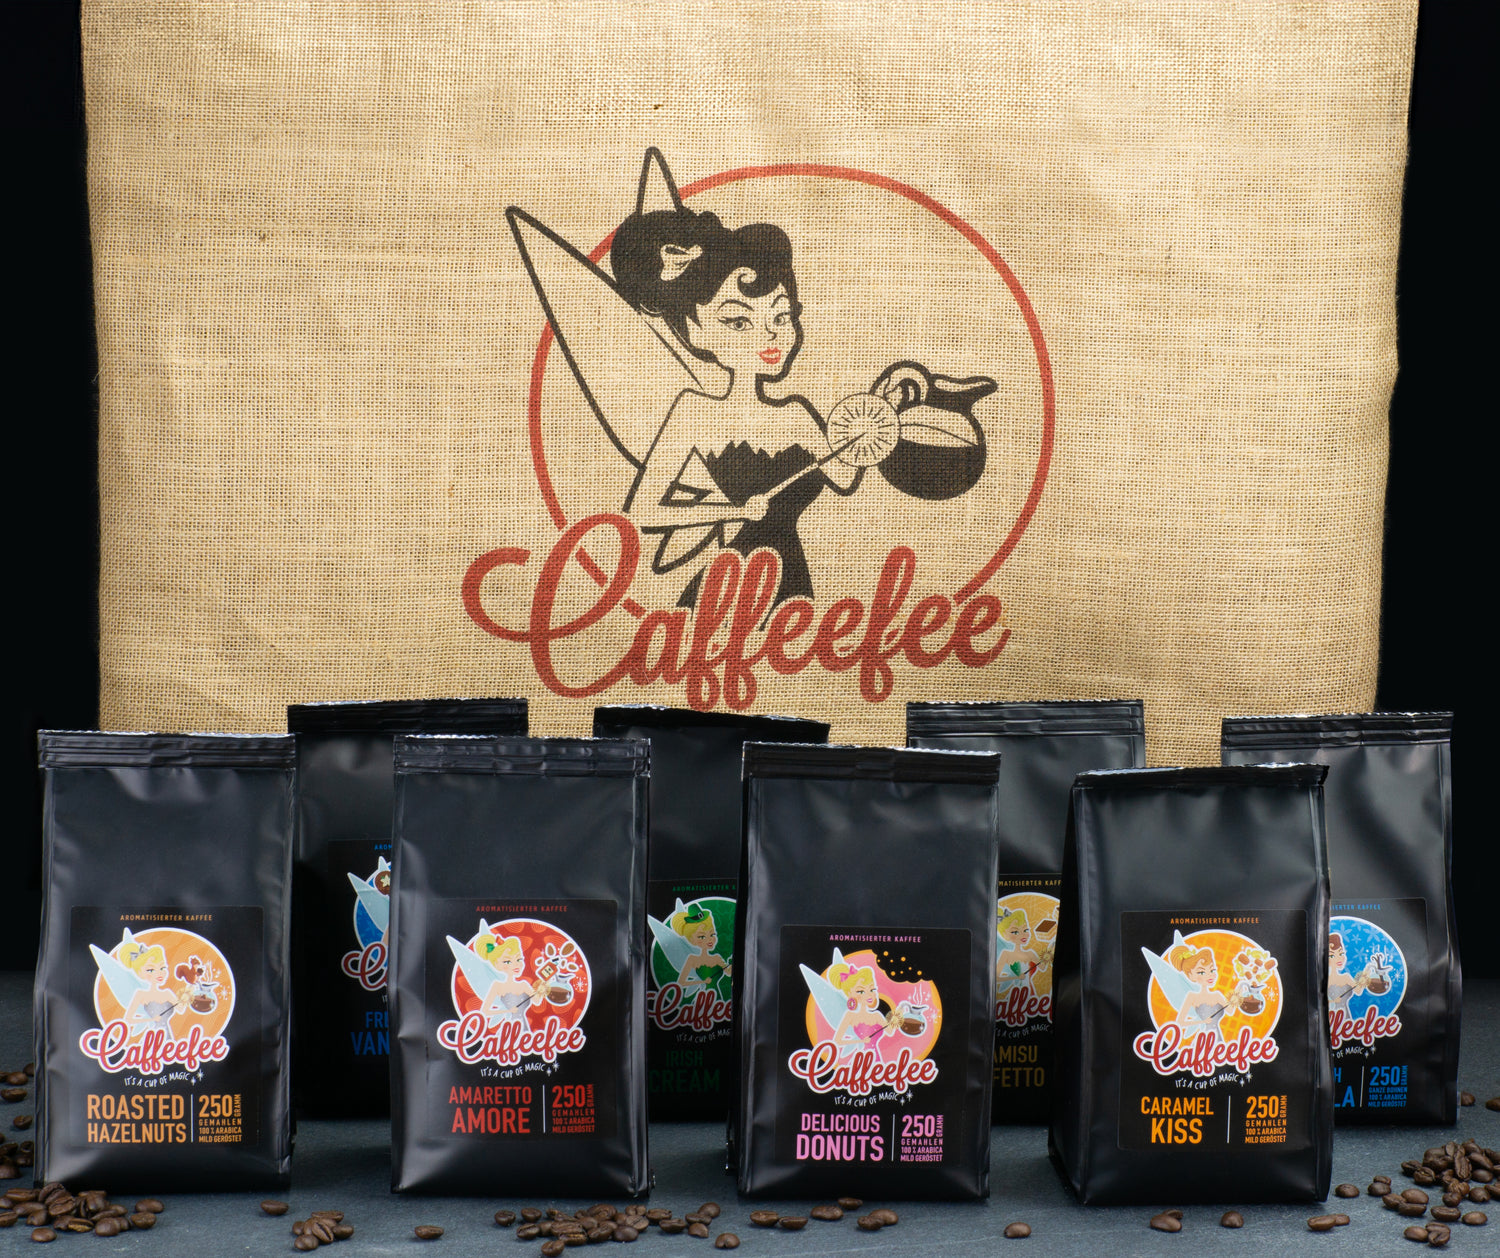 Abbildung aller Sorten Caffeefee nebeneinander. Im Hintergrund ein Kaffeesack, der mit dem Caffeefee-Logo bedruckt ist.